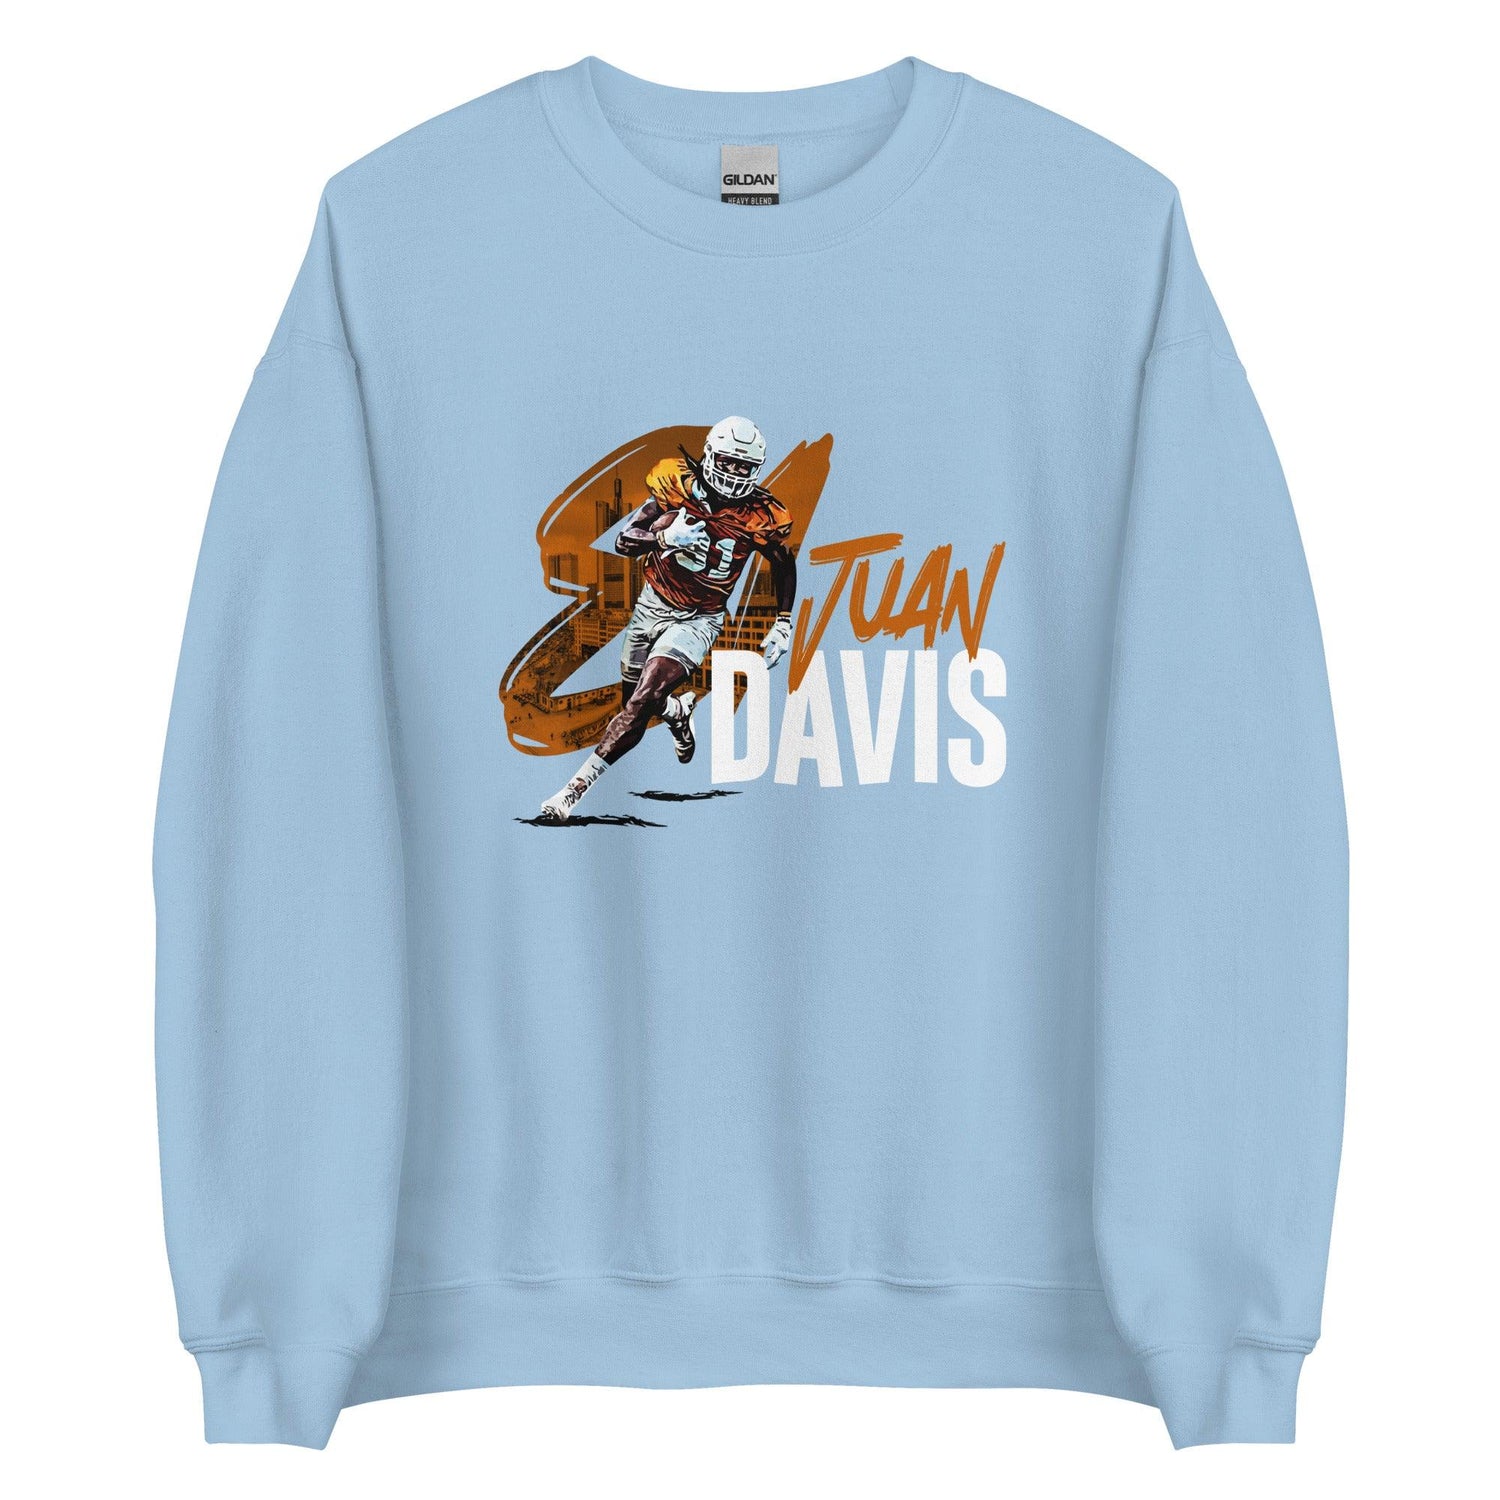 Juan Davis "Gameday" Sweatshirt - Fan Arch